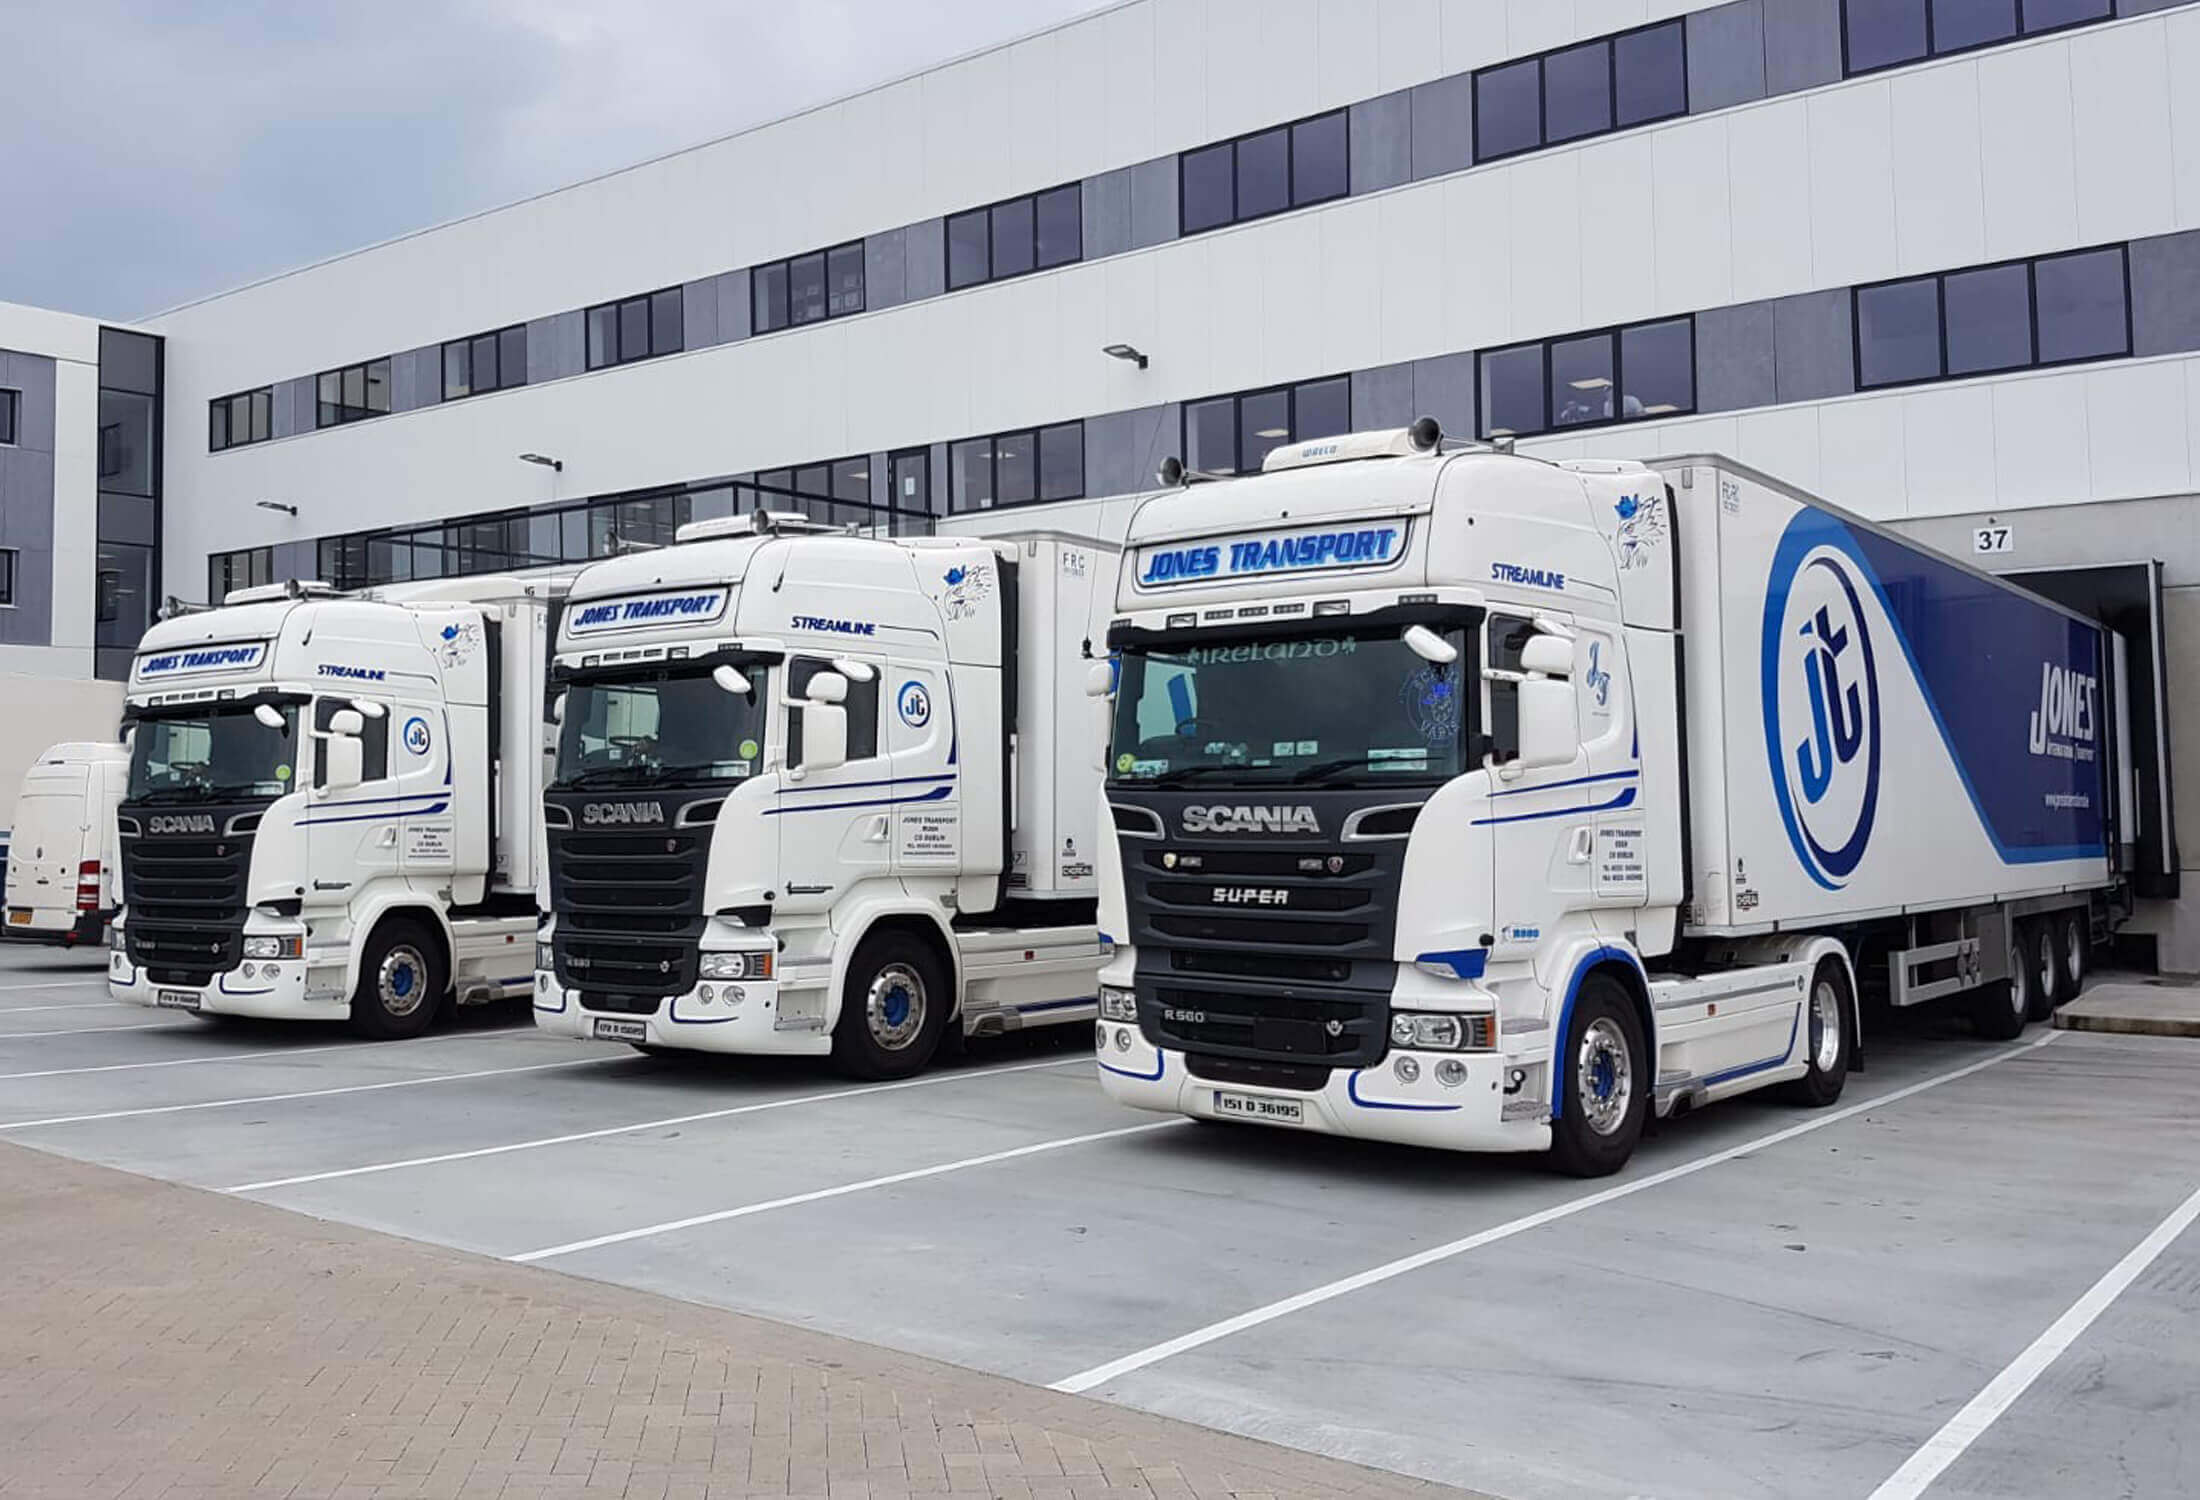 Jones International Transport trucks at their depot in Rush, Dublin